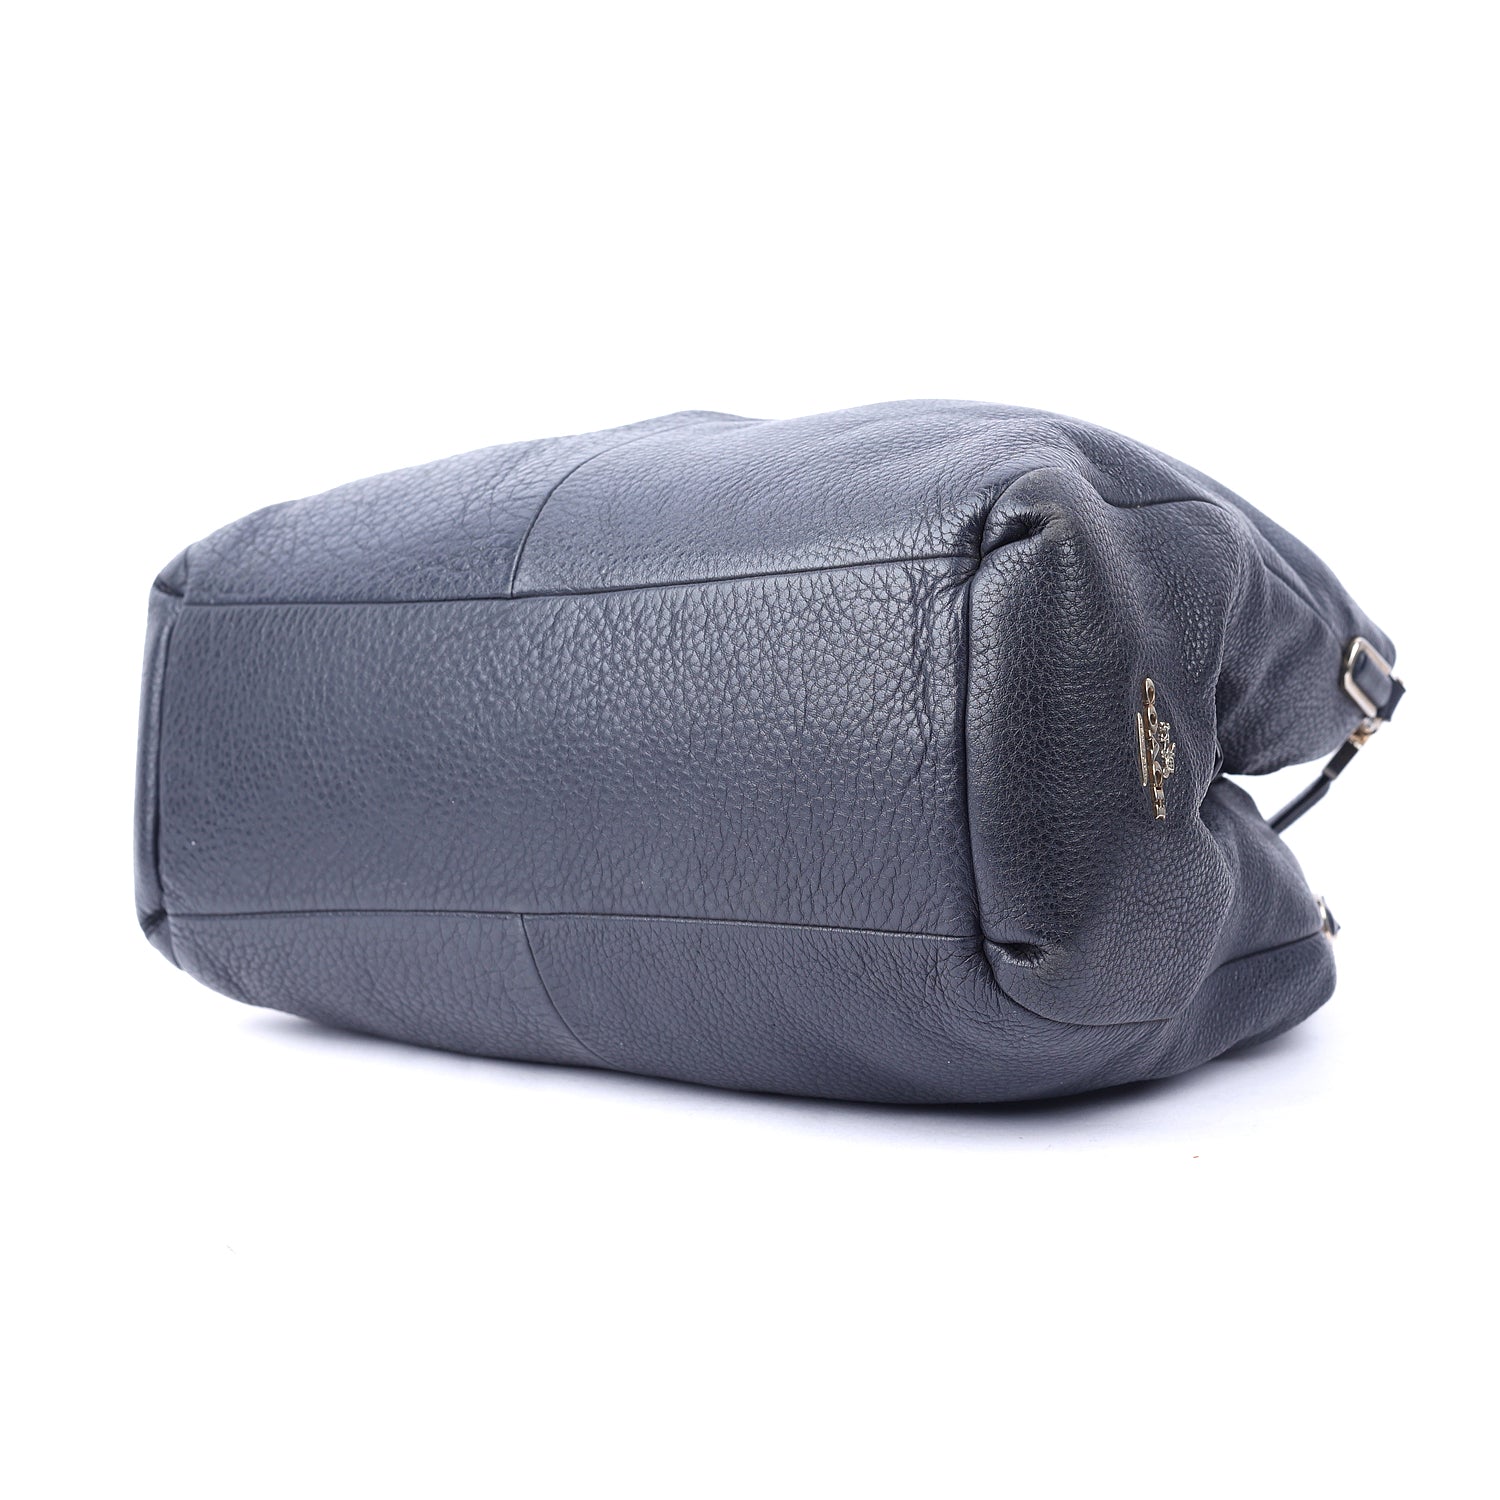 Leather Edie Shoulder Bag